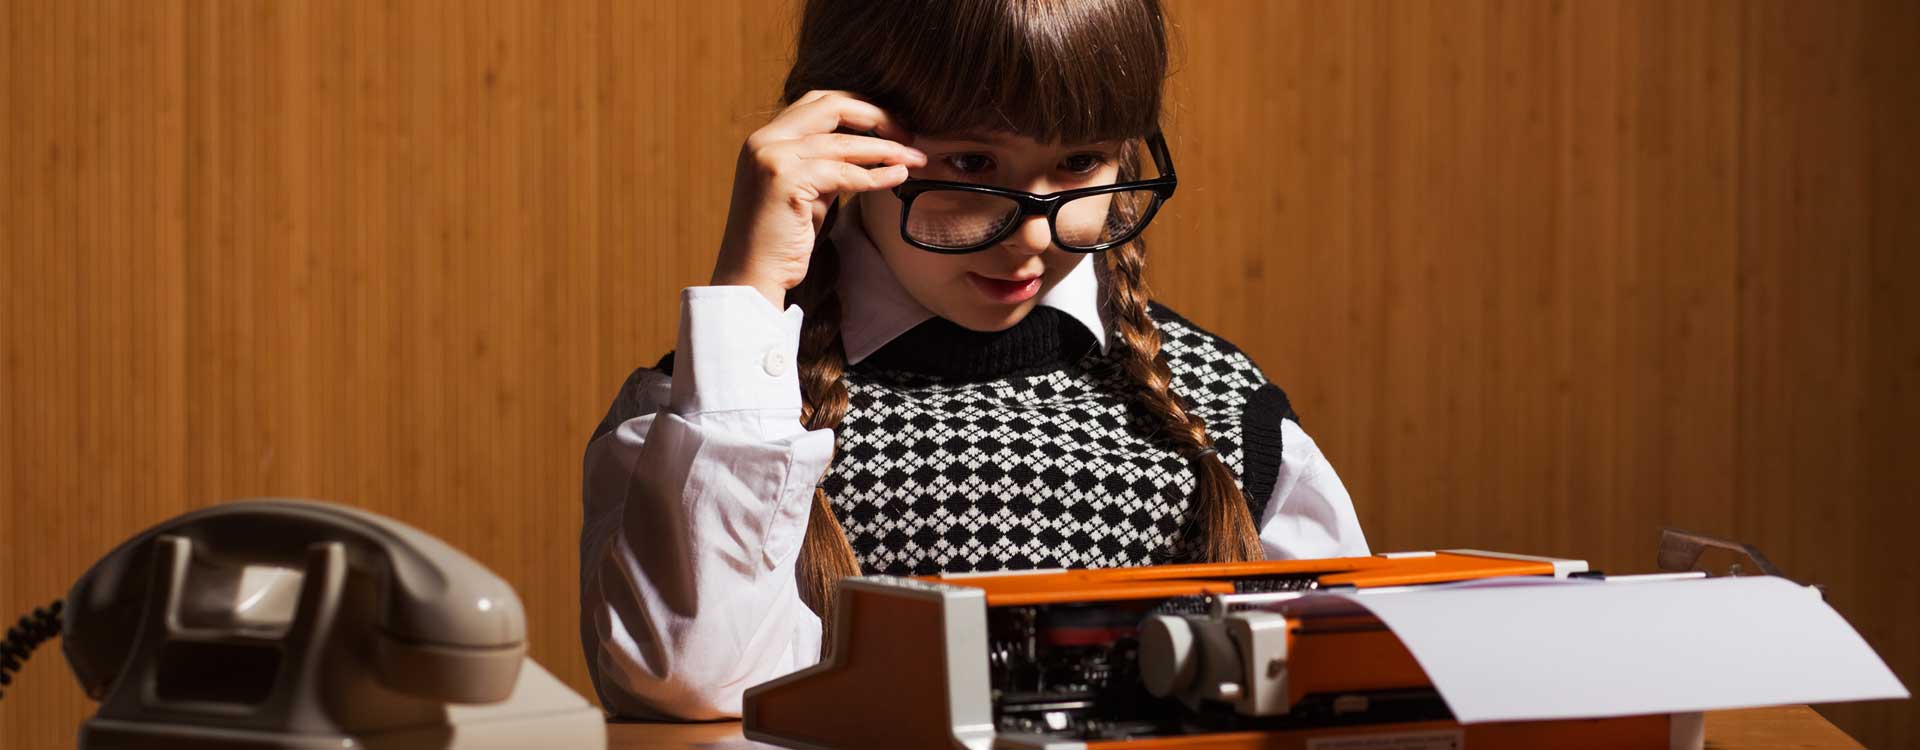 nell'immagine una bambina intenta a scrivere a macchina: concept per il blog di Creativi Digitali